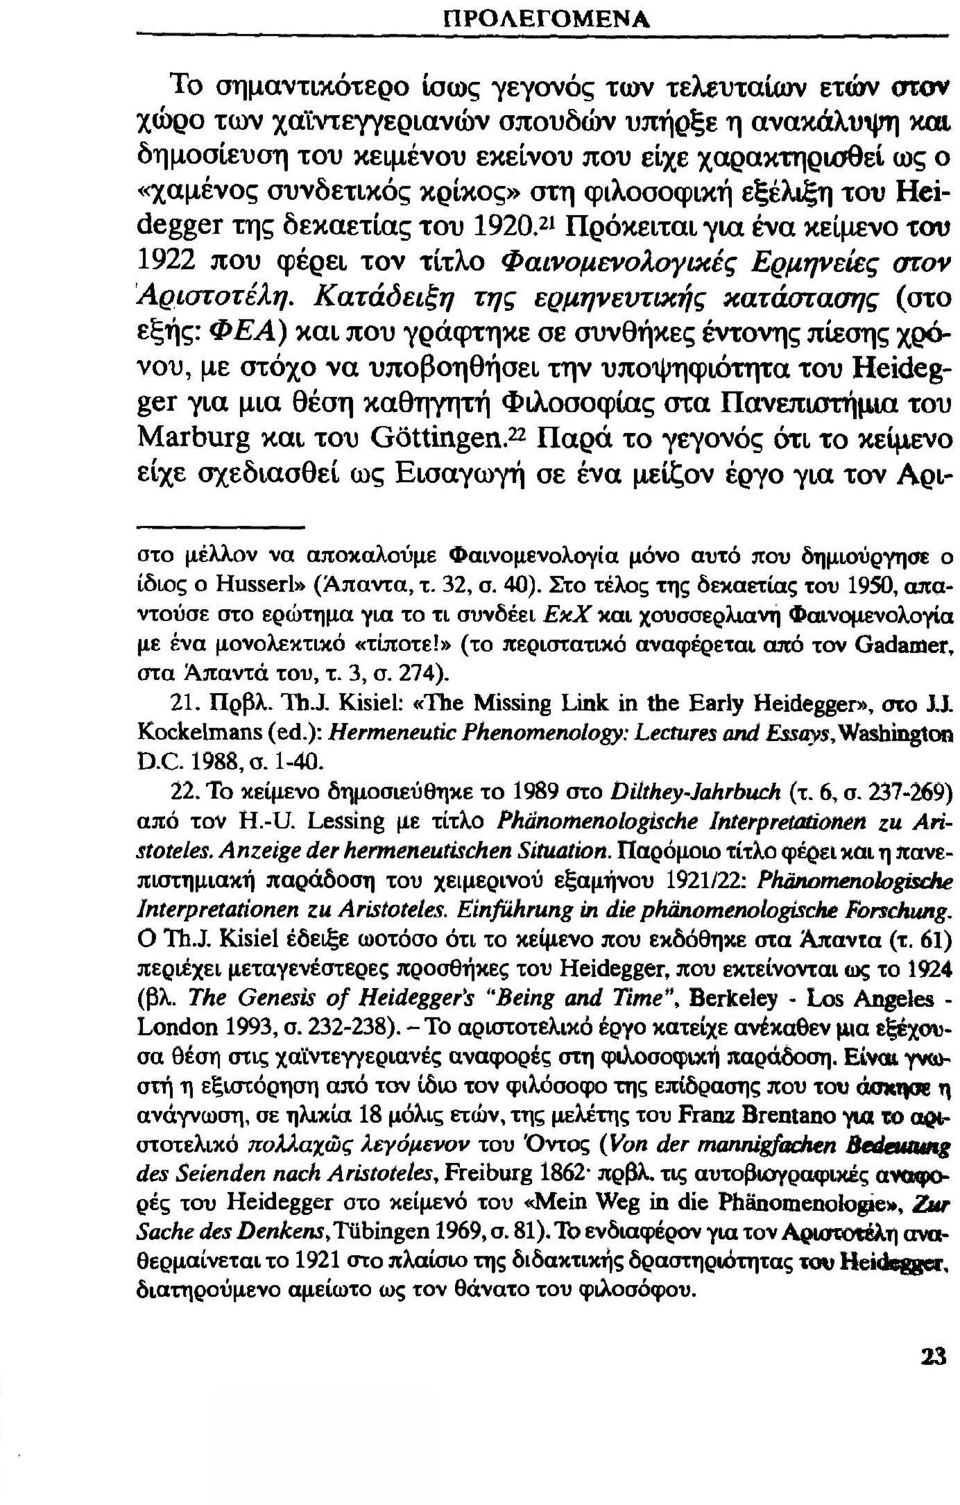 Κατάδειξη της ερμηνευτικής κατάστασης (στο εξής: Φ Ε Α) και που γρά(ρτηκε σε συνθήκες έντονης πίεσης χρόνου, με στόχο να υποβοηθήσει την υποψηφιότητα του Heidegger για μια θέση καθηγητή Φιλοσοφίας